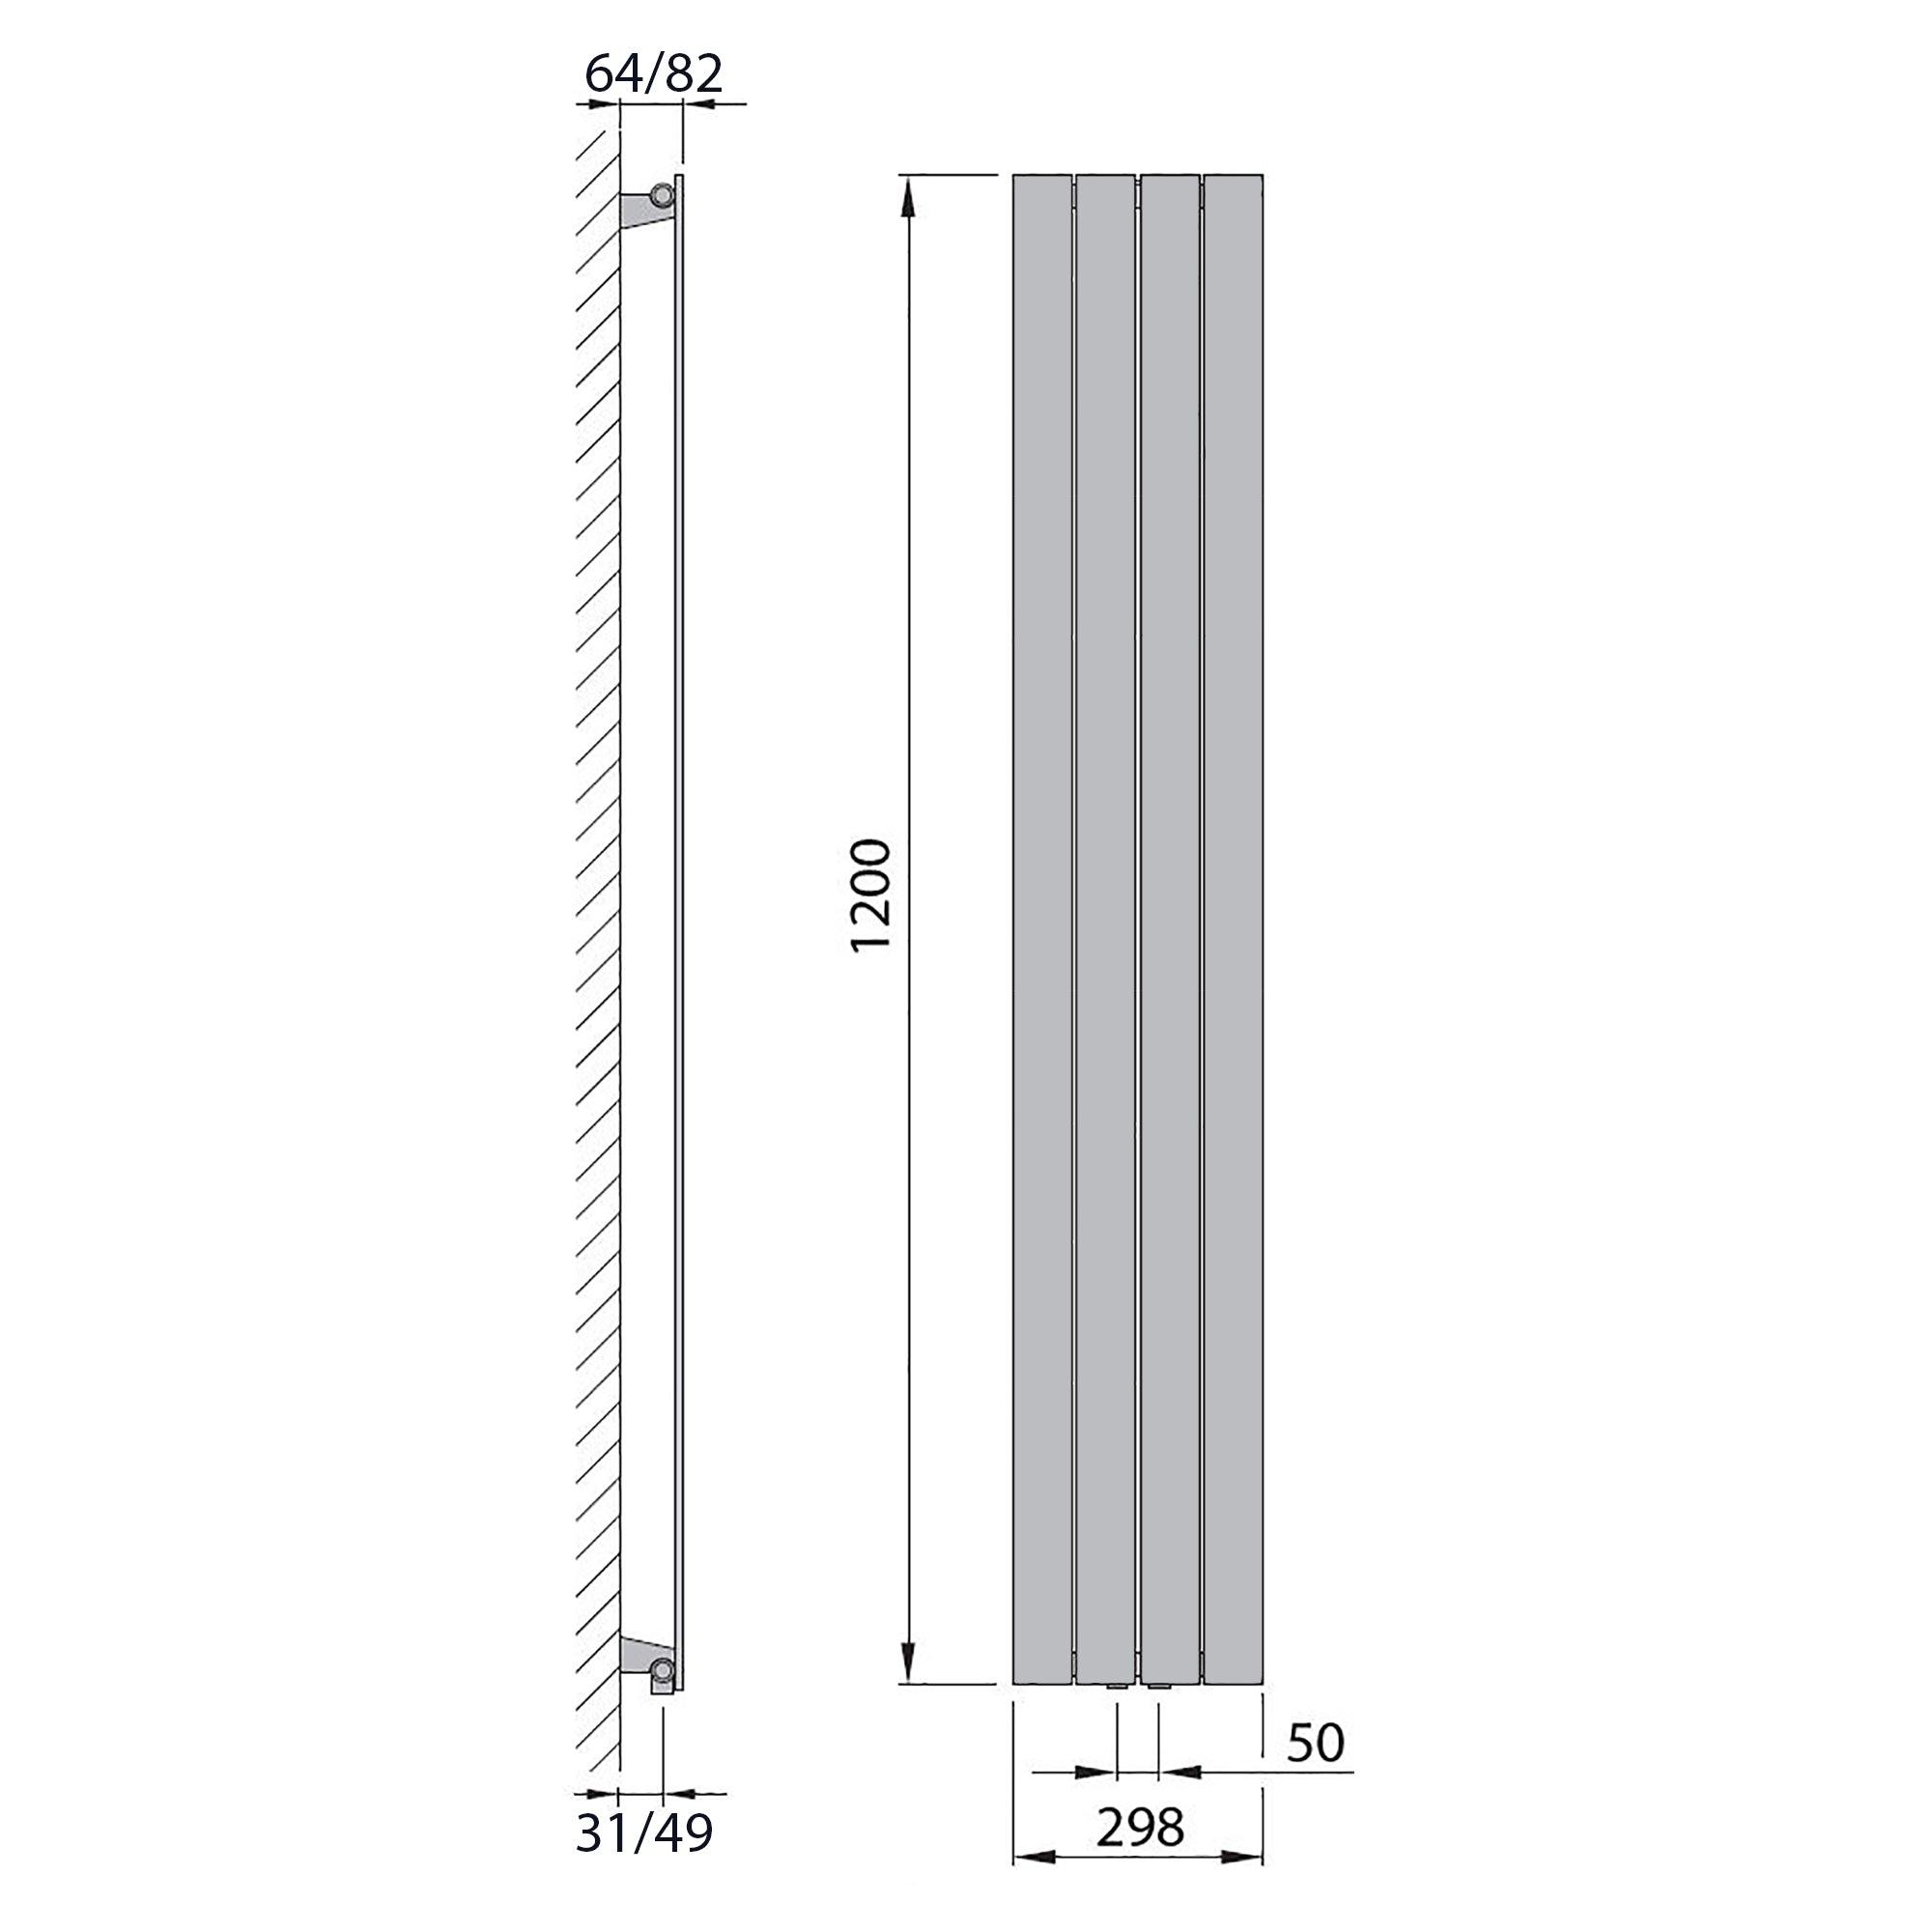 Design Paneelheizkörper vertikal 1200 x 298 weiß Heizkörper Badheizkörper flach Badezimmer Heizung technische Zeichnung - heizkoerper.shop